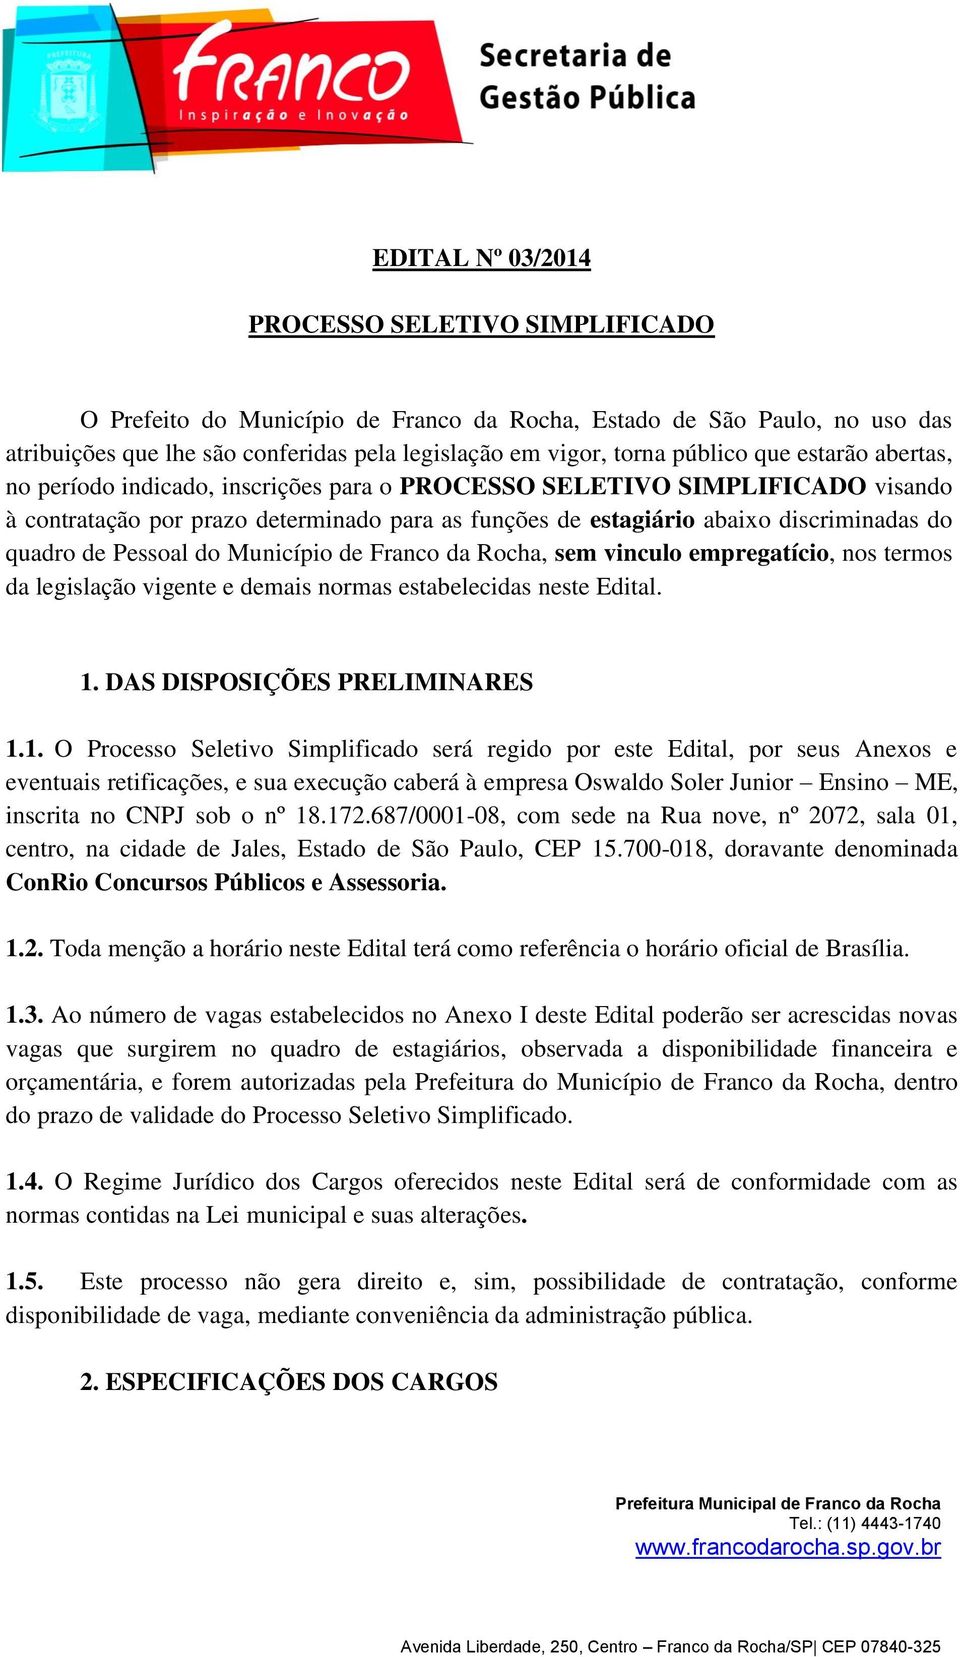 Pessoal do Município de Franco da Rocha, sem vinculo empregatício, nos termos da legislação vigente e demais normas estabelecidas neste Edital. 1.